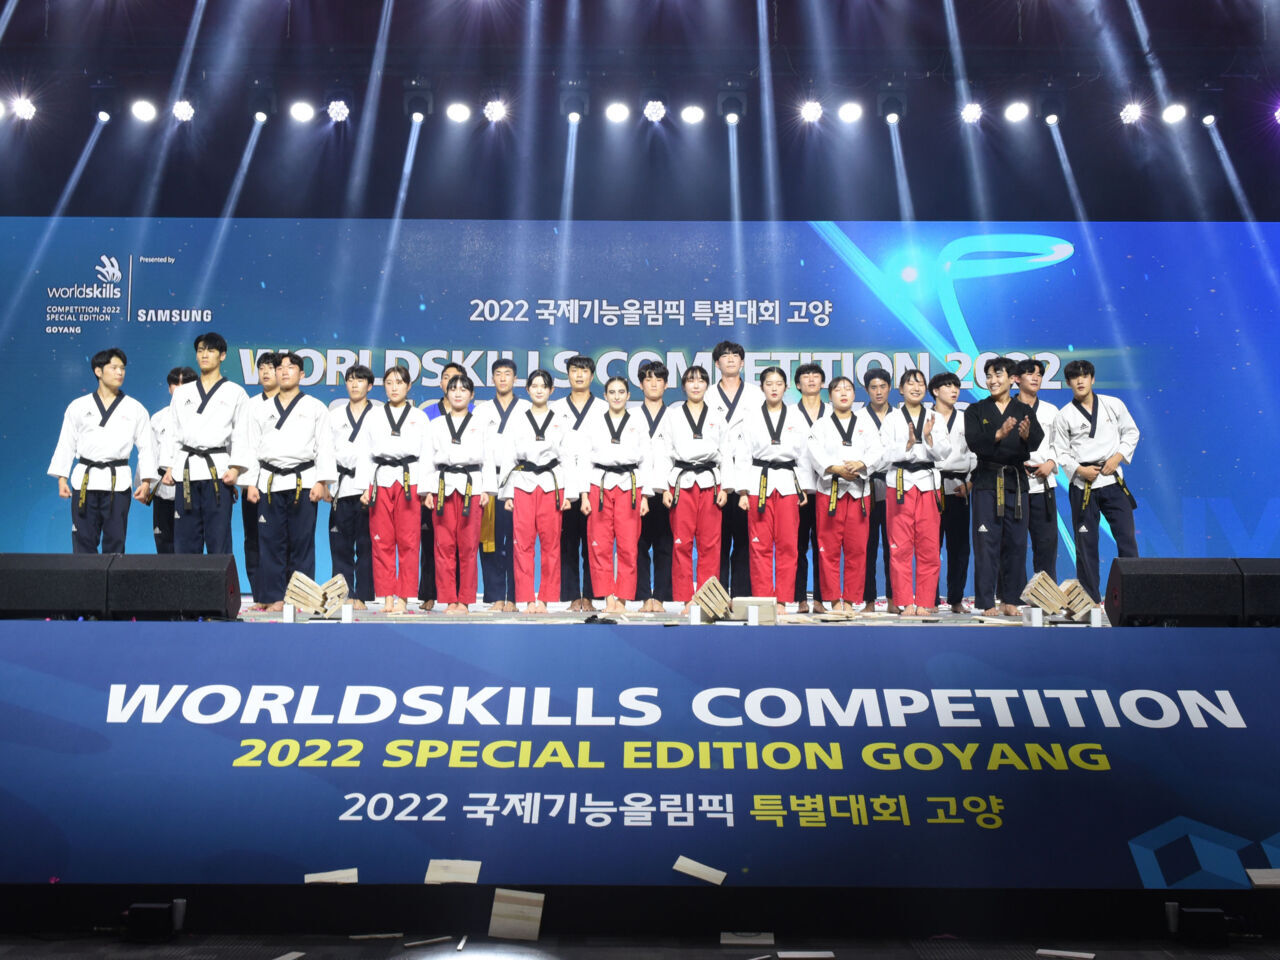 韩国的技能比赛反映了新技术和行业